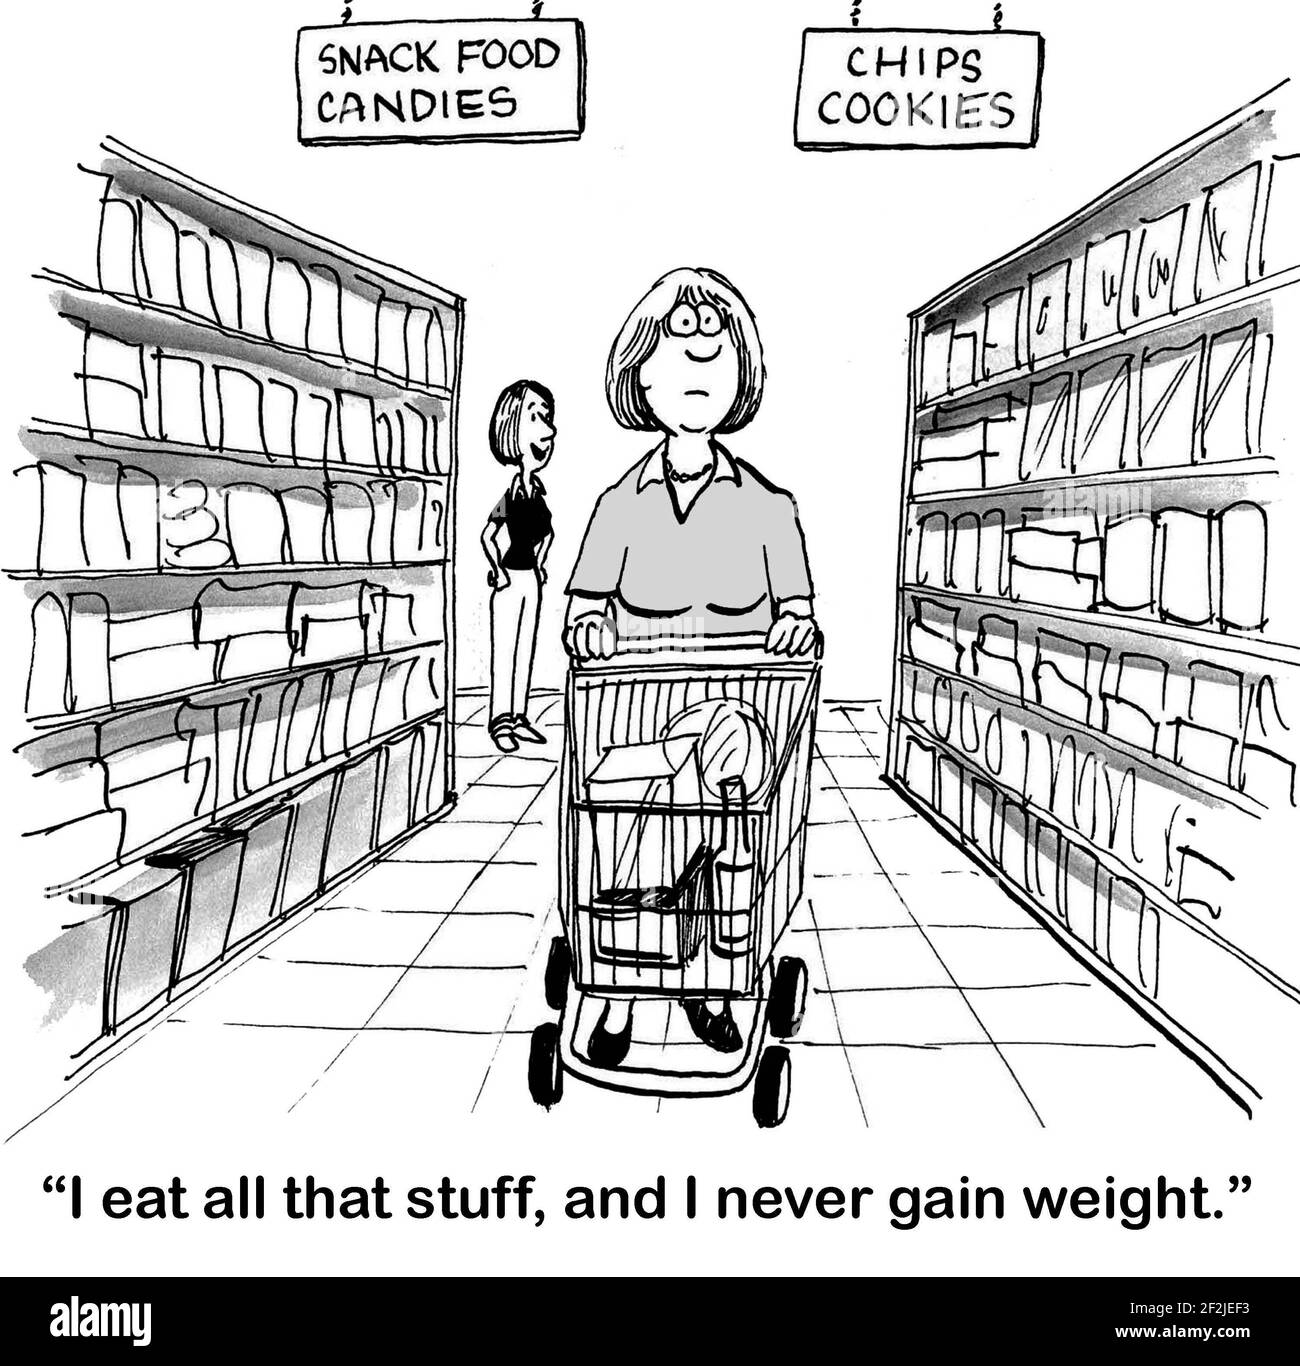 La donna acquirente è detto che può mangiare cibo spazzatura e non guadagnare peso. Foto Stock